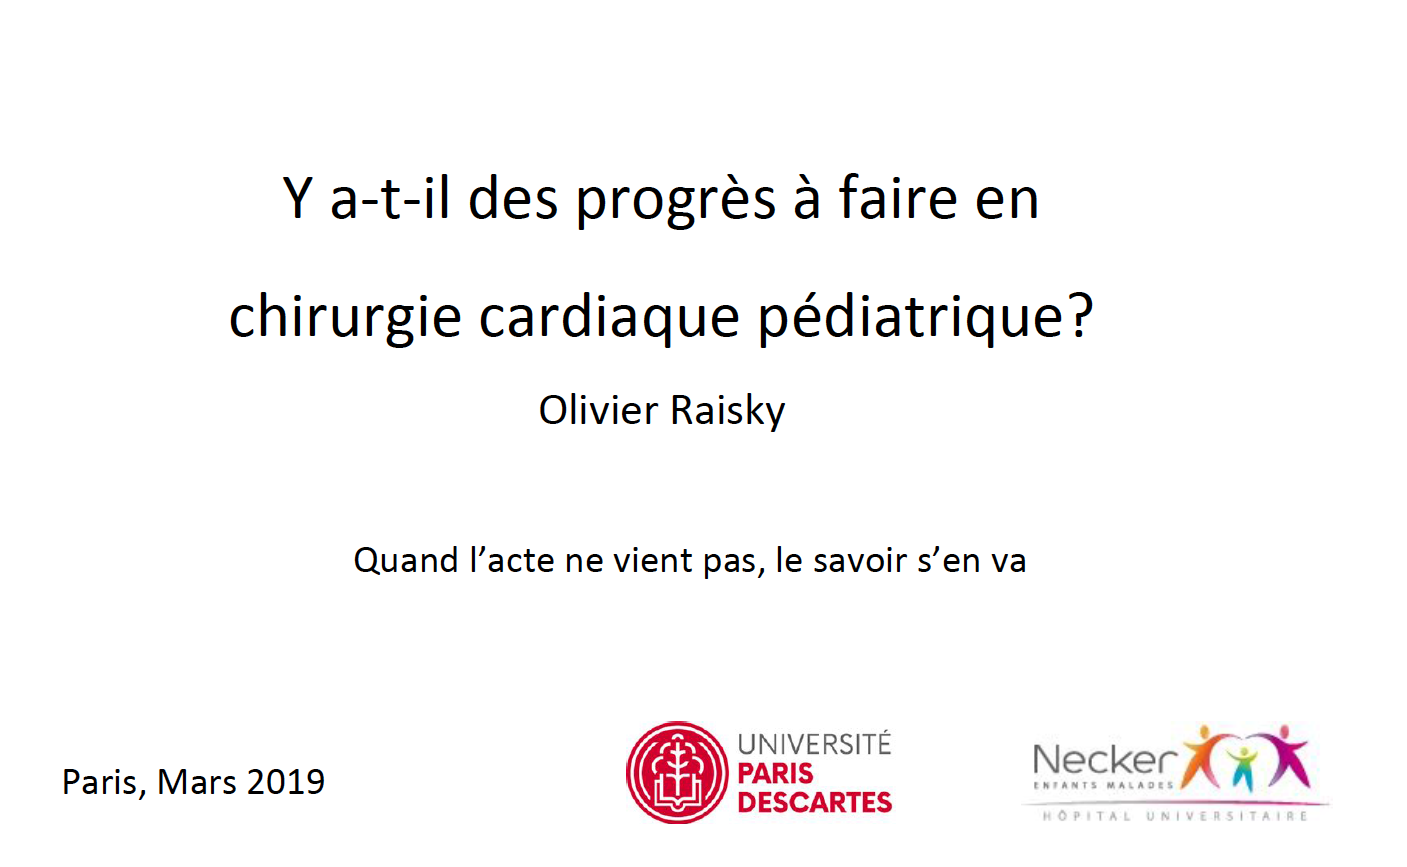 Y a t il des progrès à faire en chirurgie cardiaque - Olivier Raisky 2019